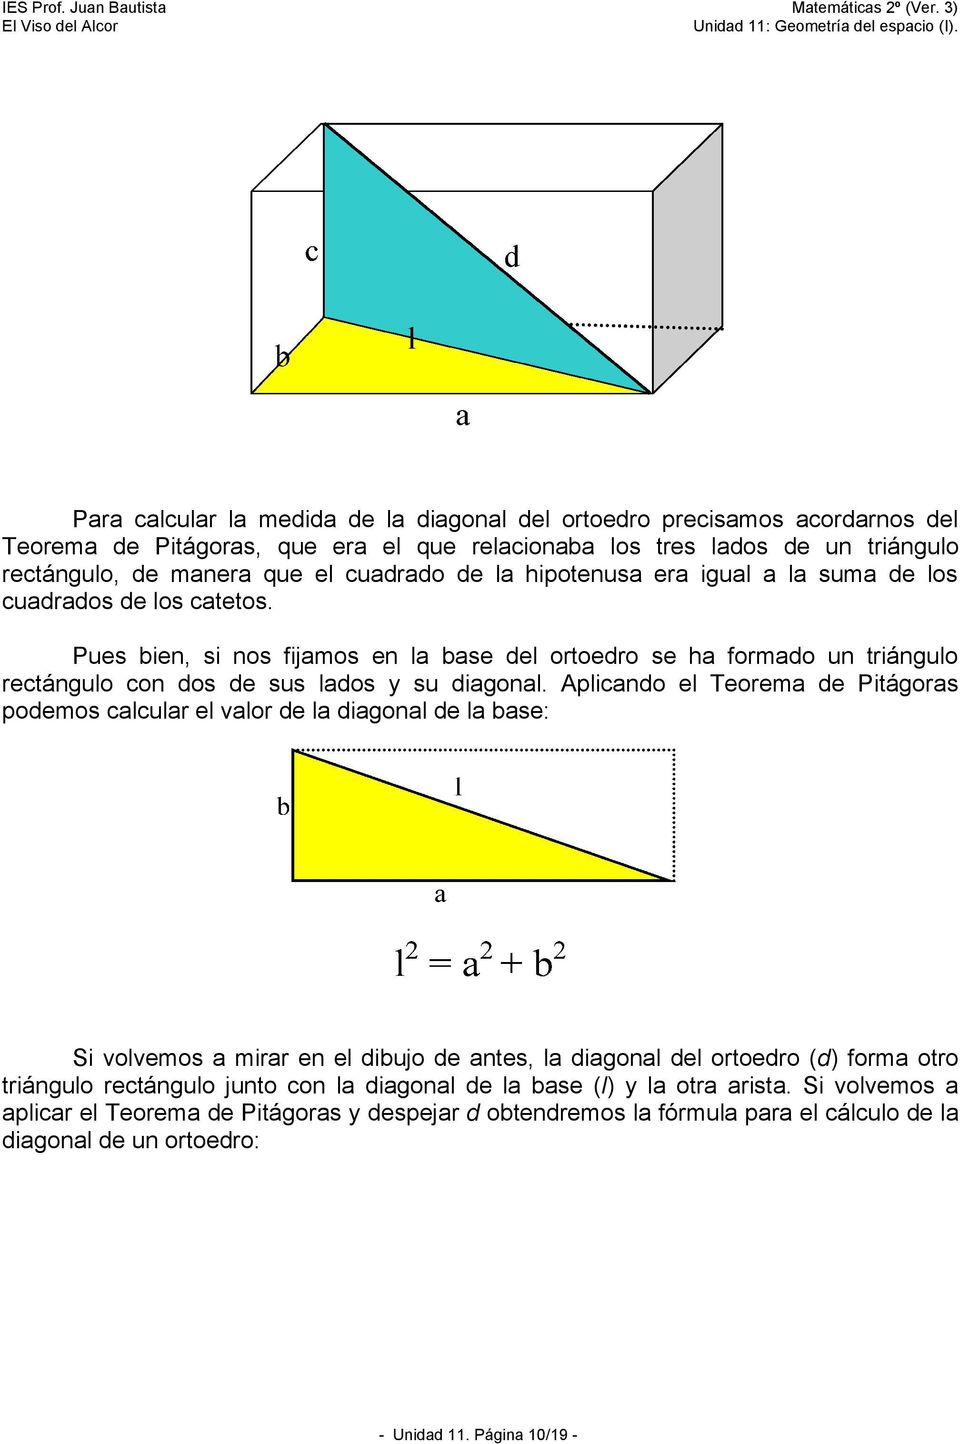 Aplicando el Teorema de Pitágoras podemos calcular el valor de la diagonal de la base: Si volvemos a mirar en el dibujo de antes, la diagonal del ortoedro (d) forma otro triángulo rectángulo junto